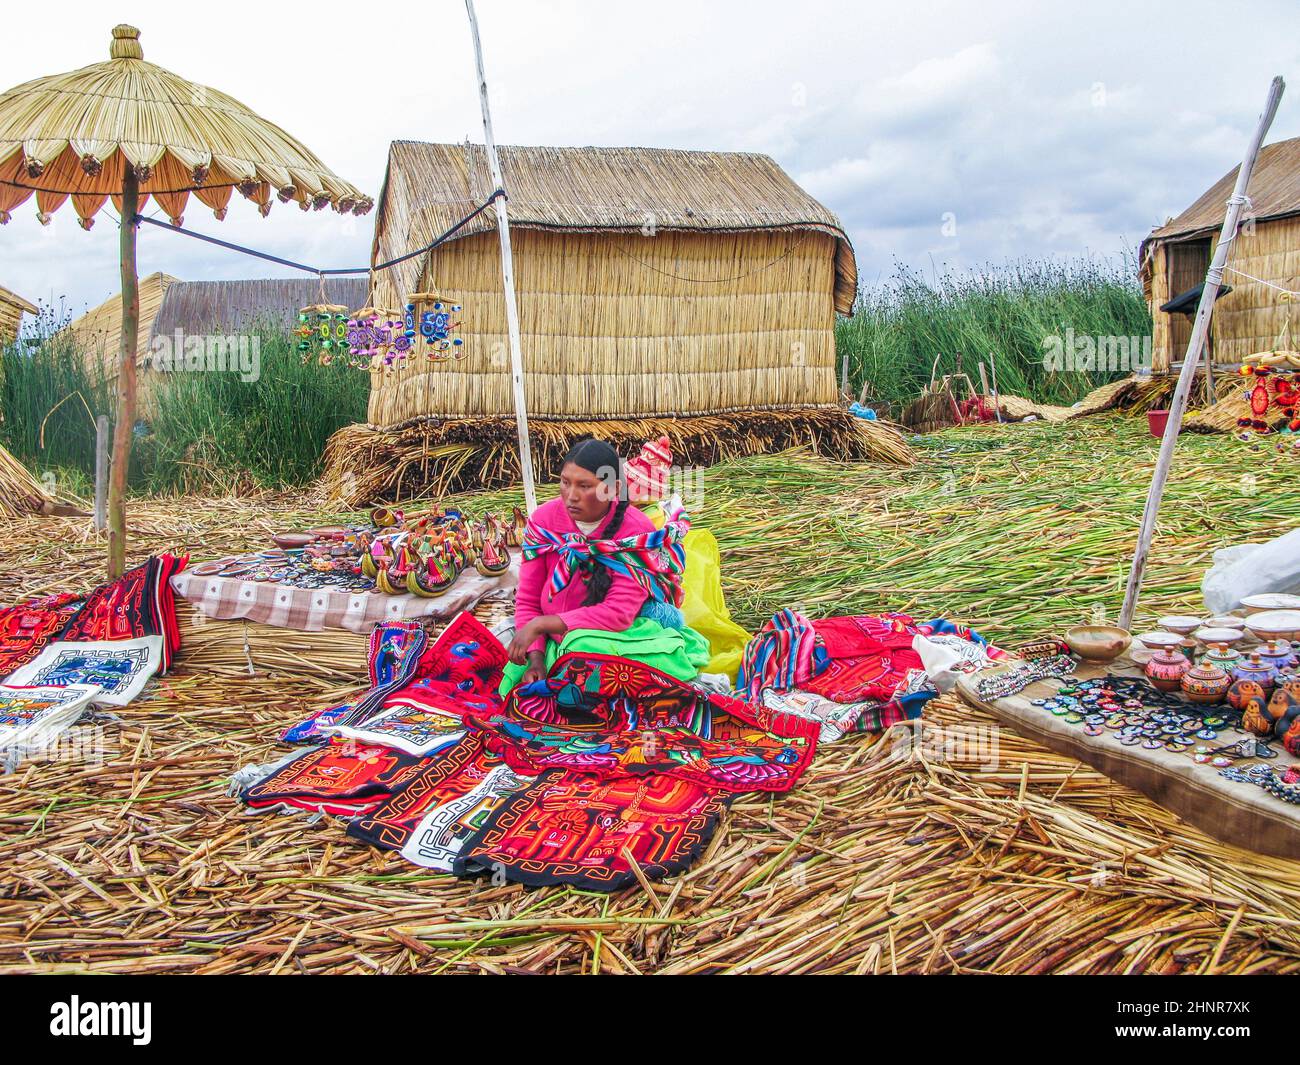 Les femmes de la région dans le travail traditionnel de tenue vendent de l'artisanat Banque D'Images